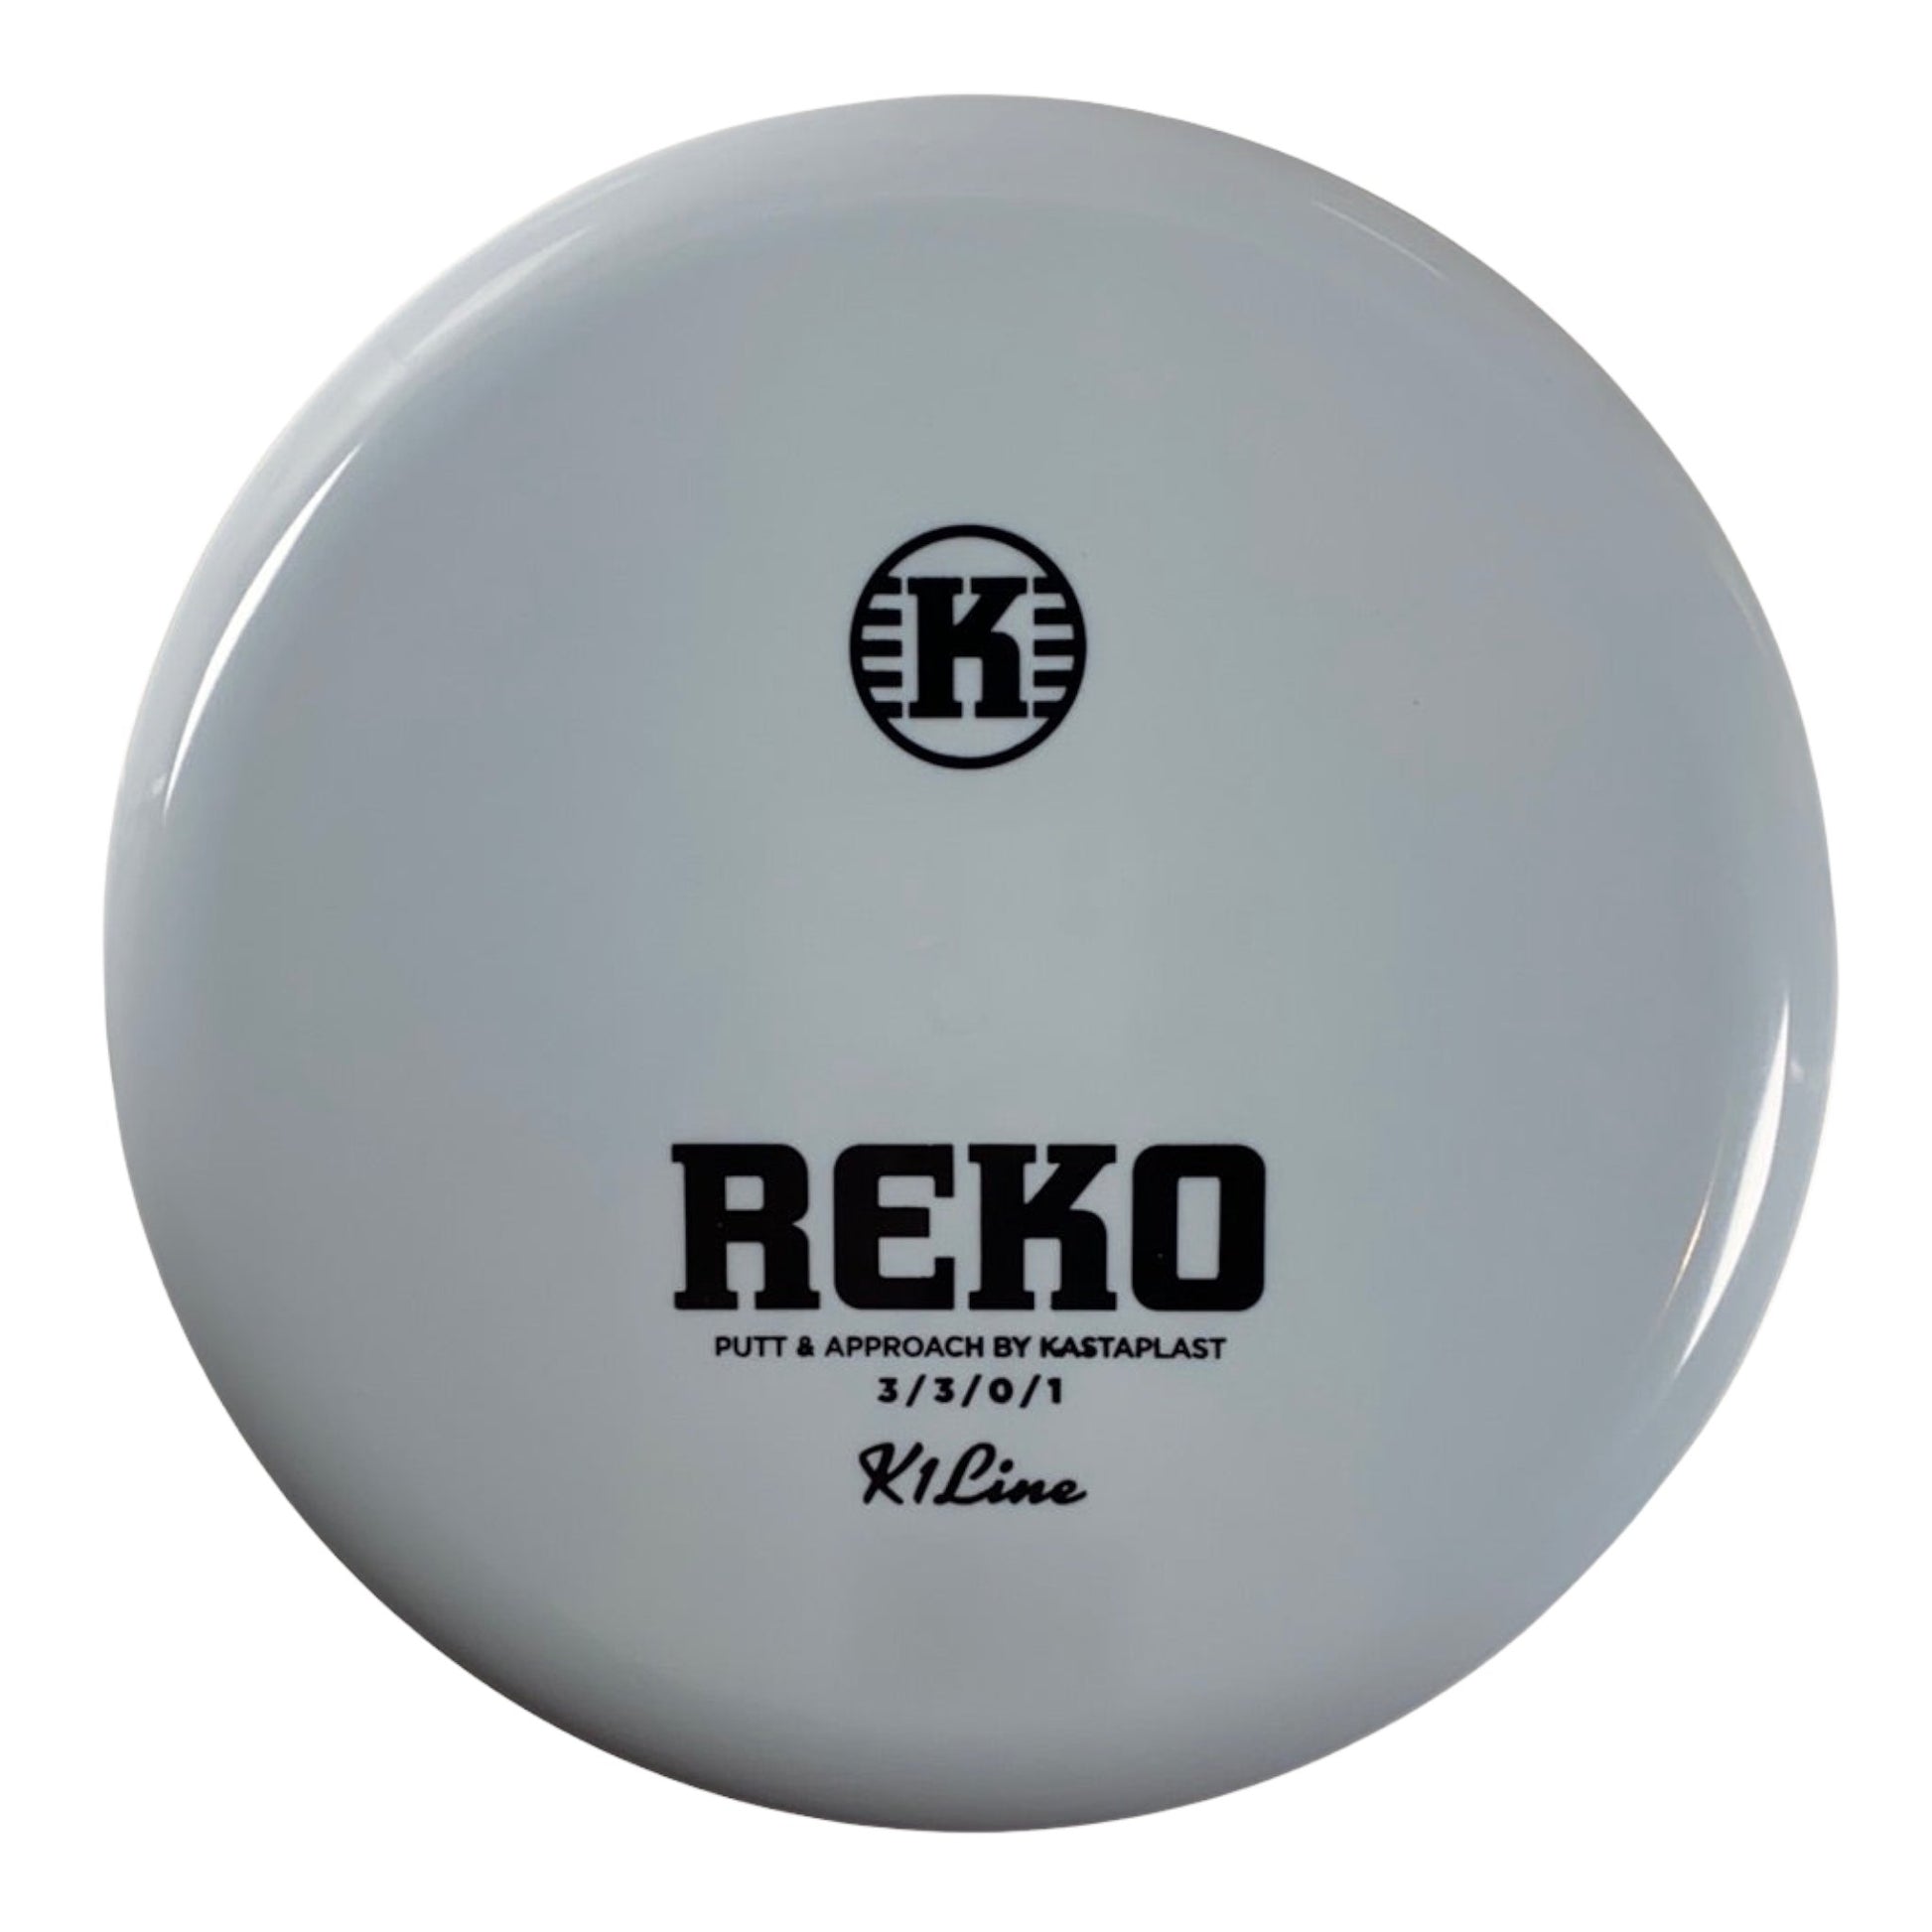 Kastaplast Reko | K1 | Blue/Black 172g Disc Golf